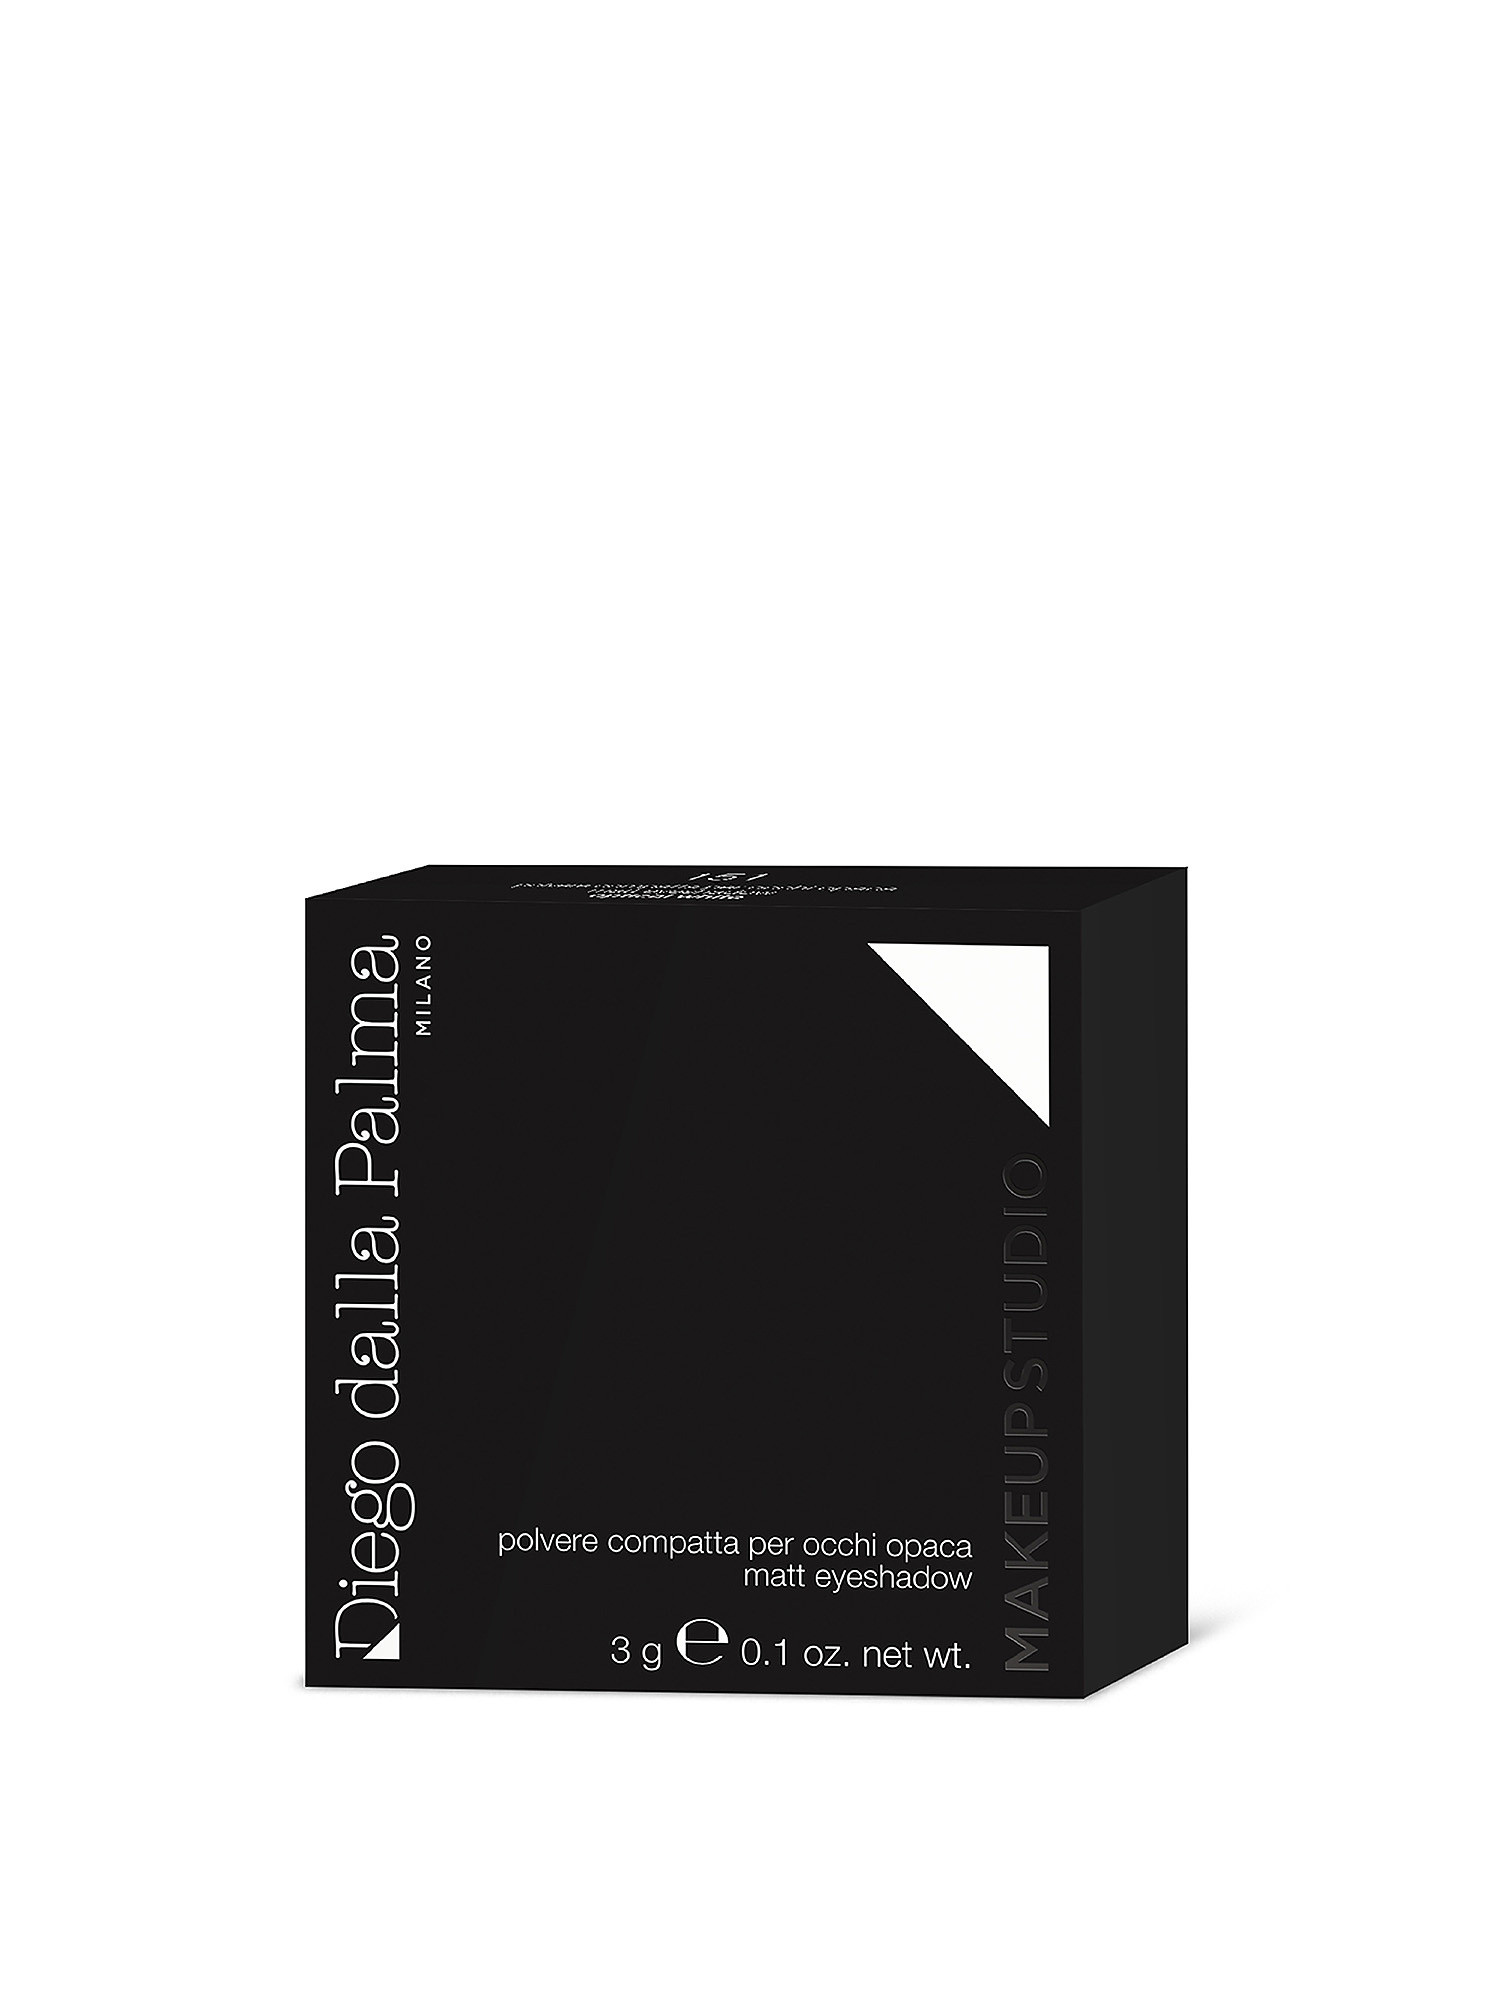 Makeupstudio Compact Matte Eye Powder - 151 optical white, White, large image number 2